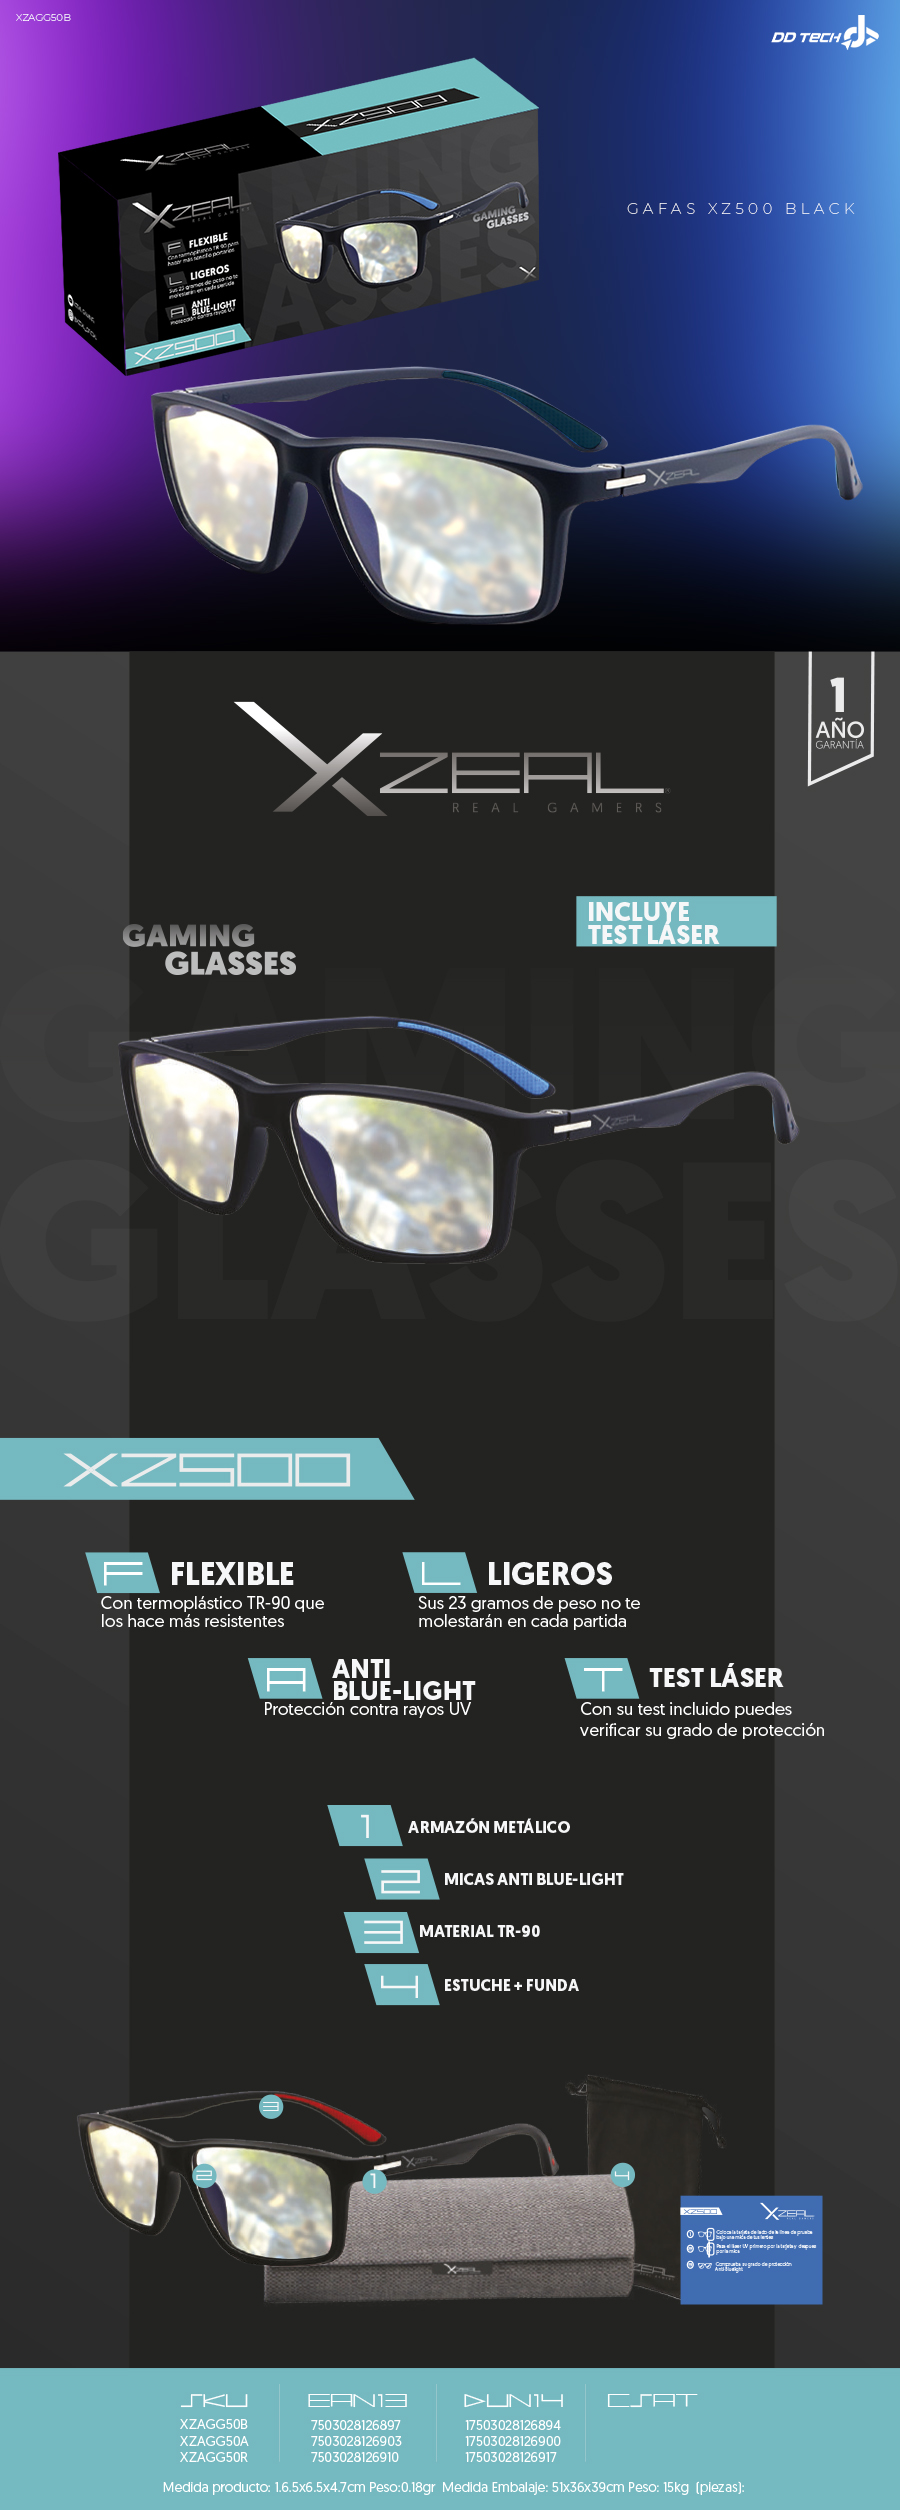 HyperX Spectre Mission - Gafas para juegos, bloqueo de luz azul, protección  UV, lentes transparentes, marco TR-90, bolsa de microfibra, marco cuadrado